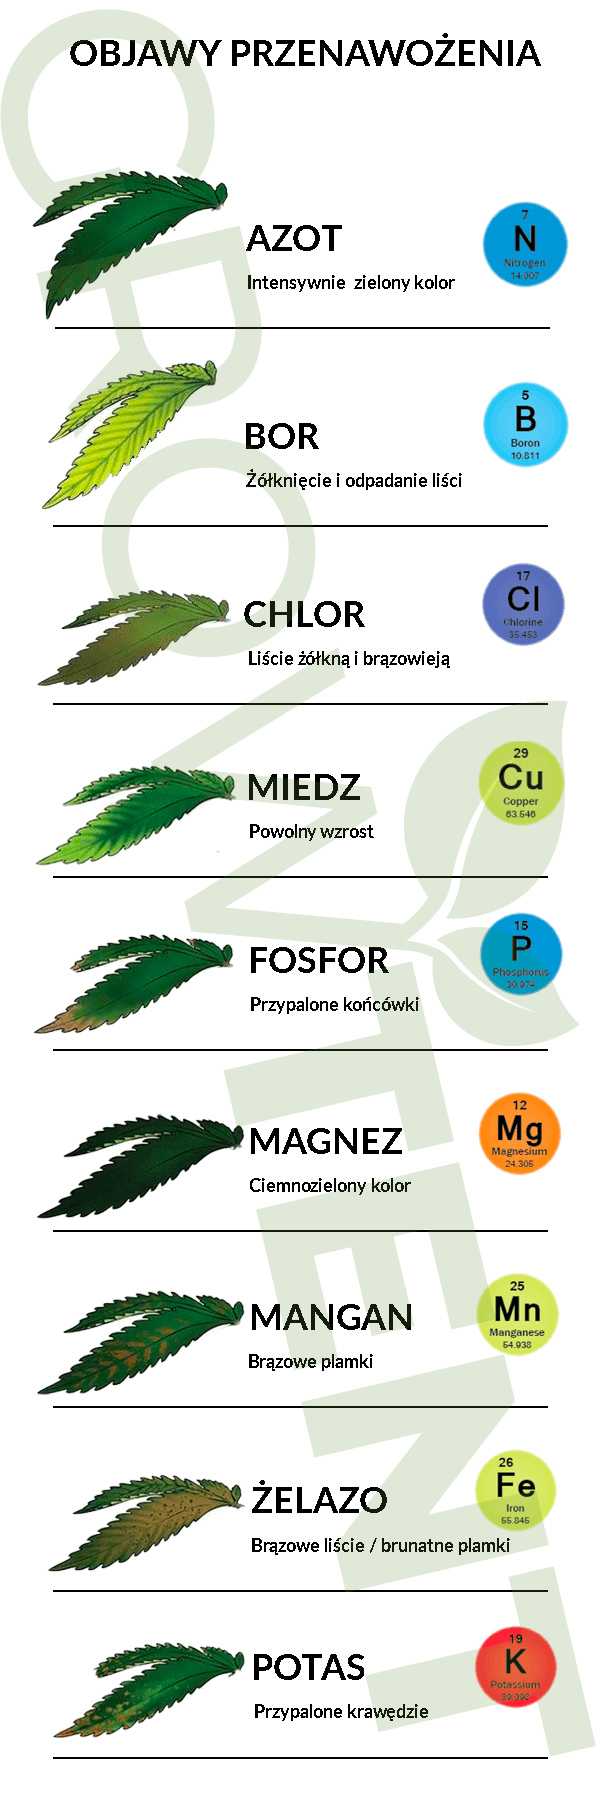 objawy przenawożenia roślin - infografika